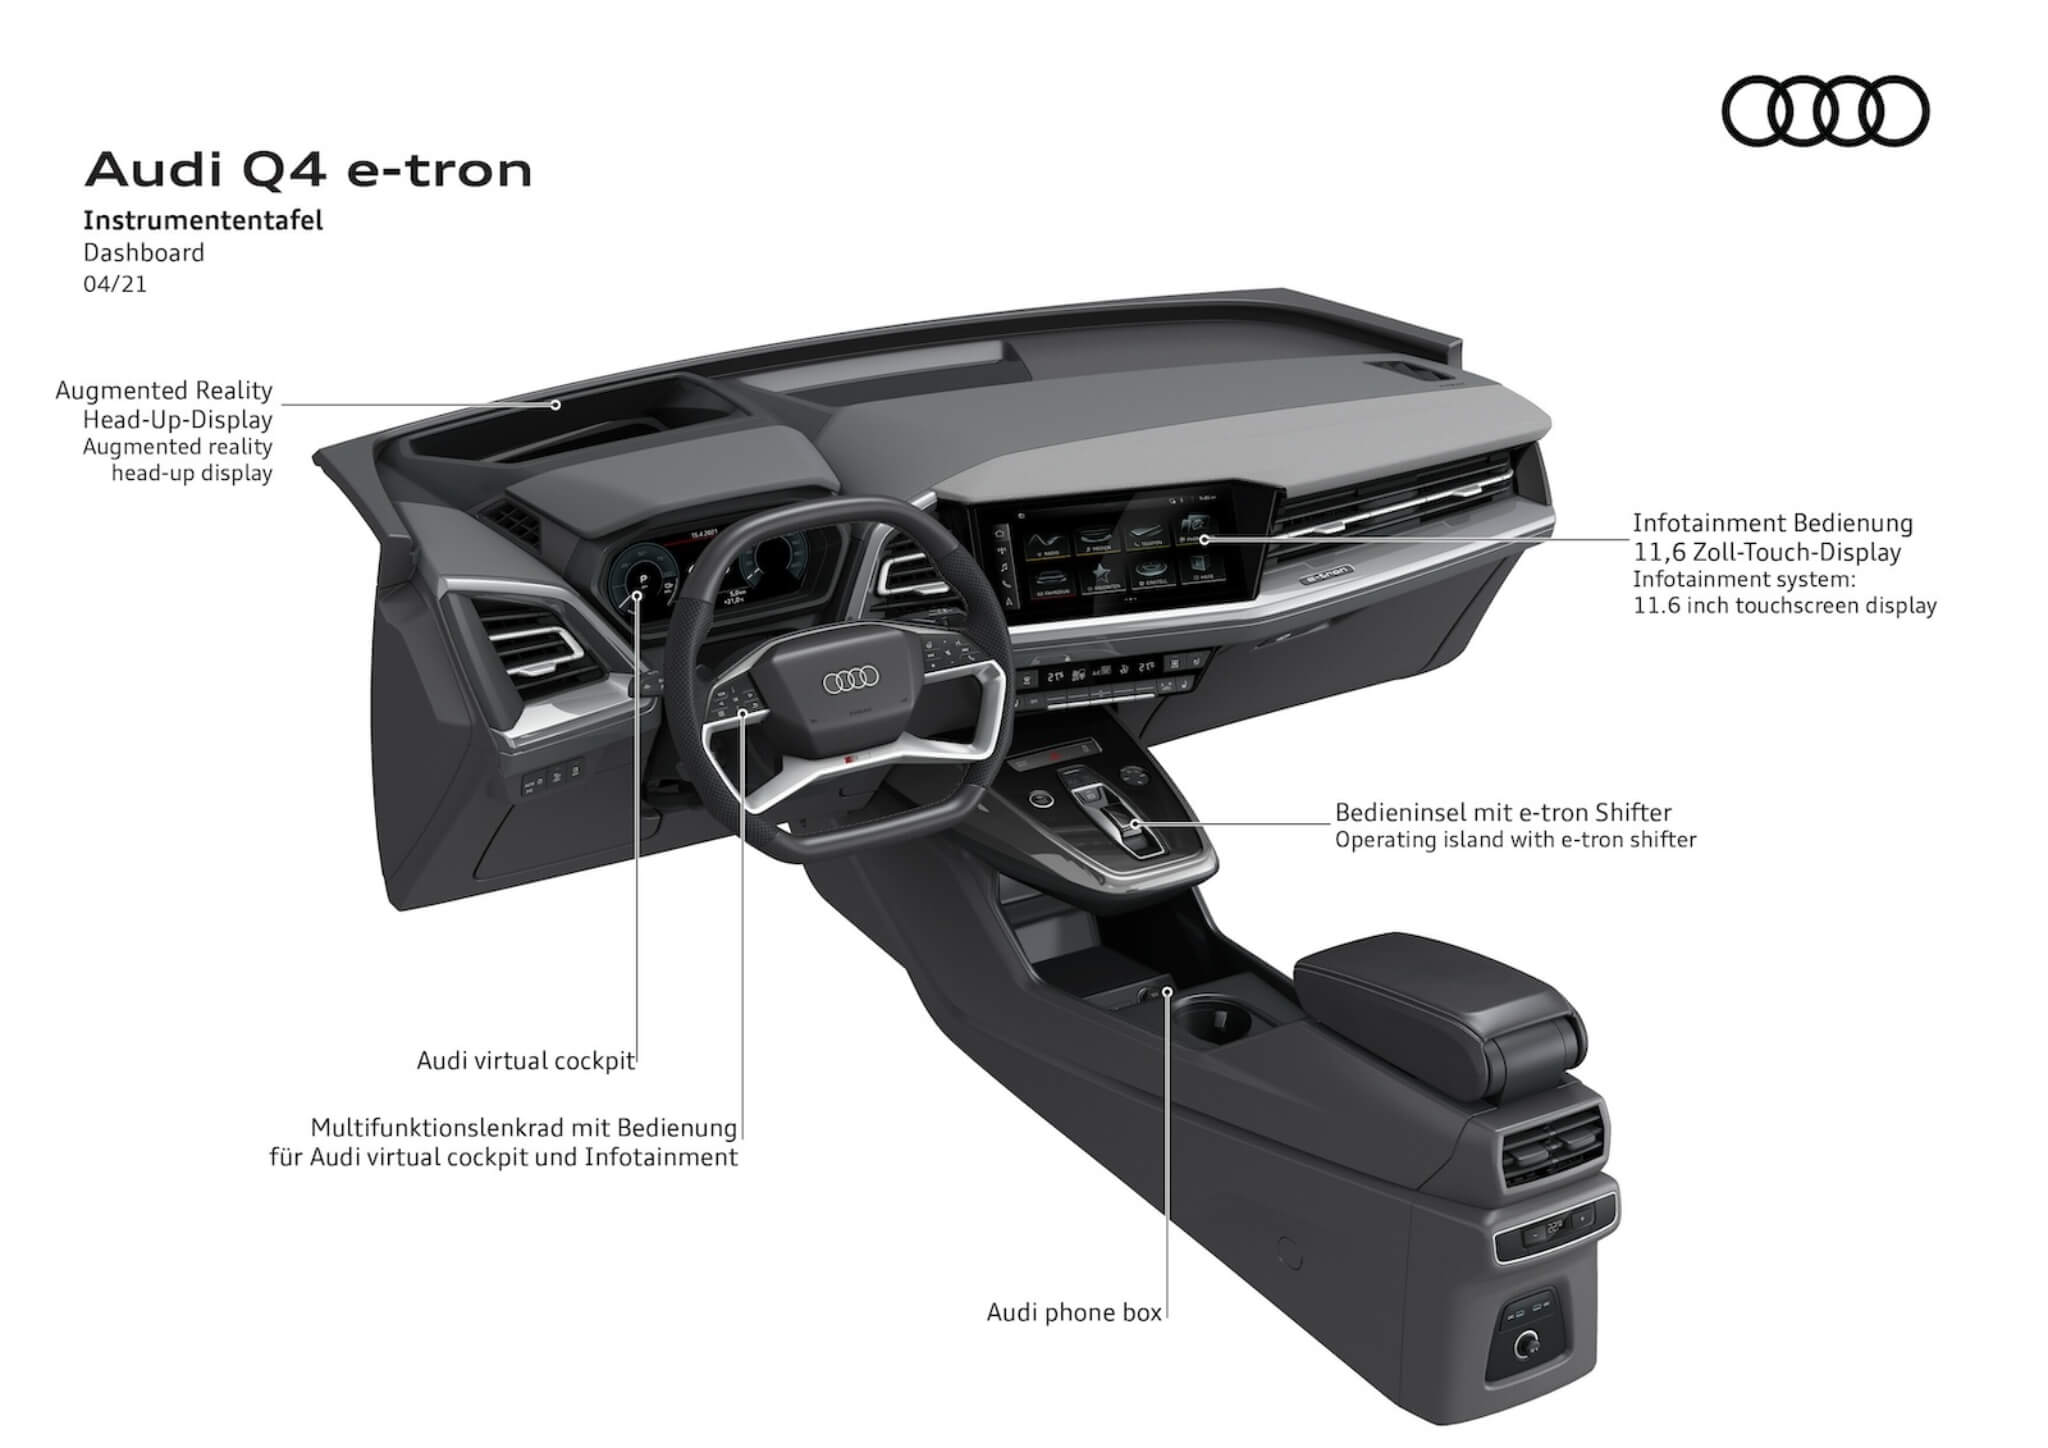 painel de instrumentos Audi Q4-Etron